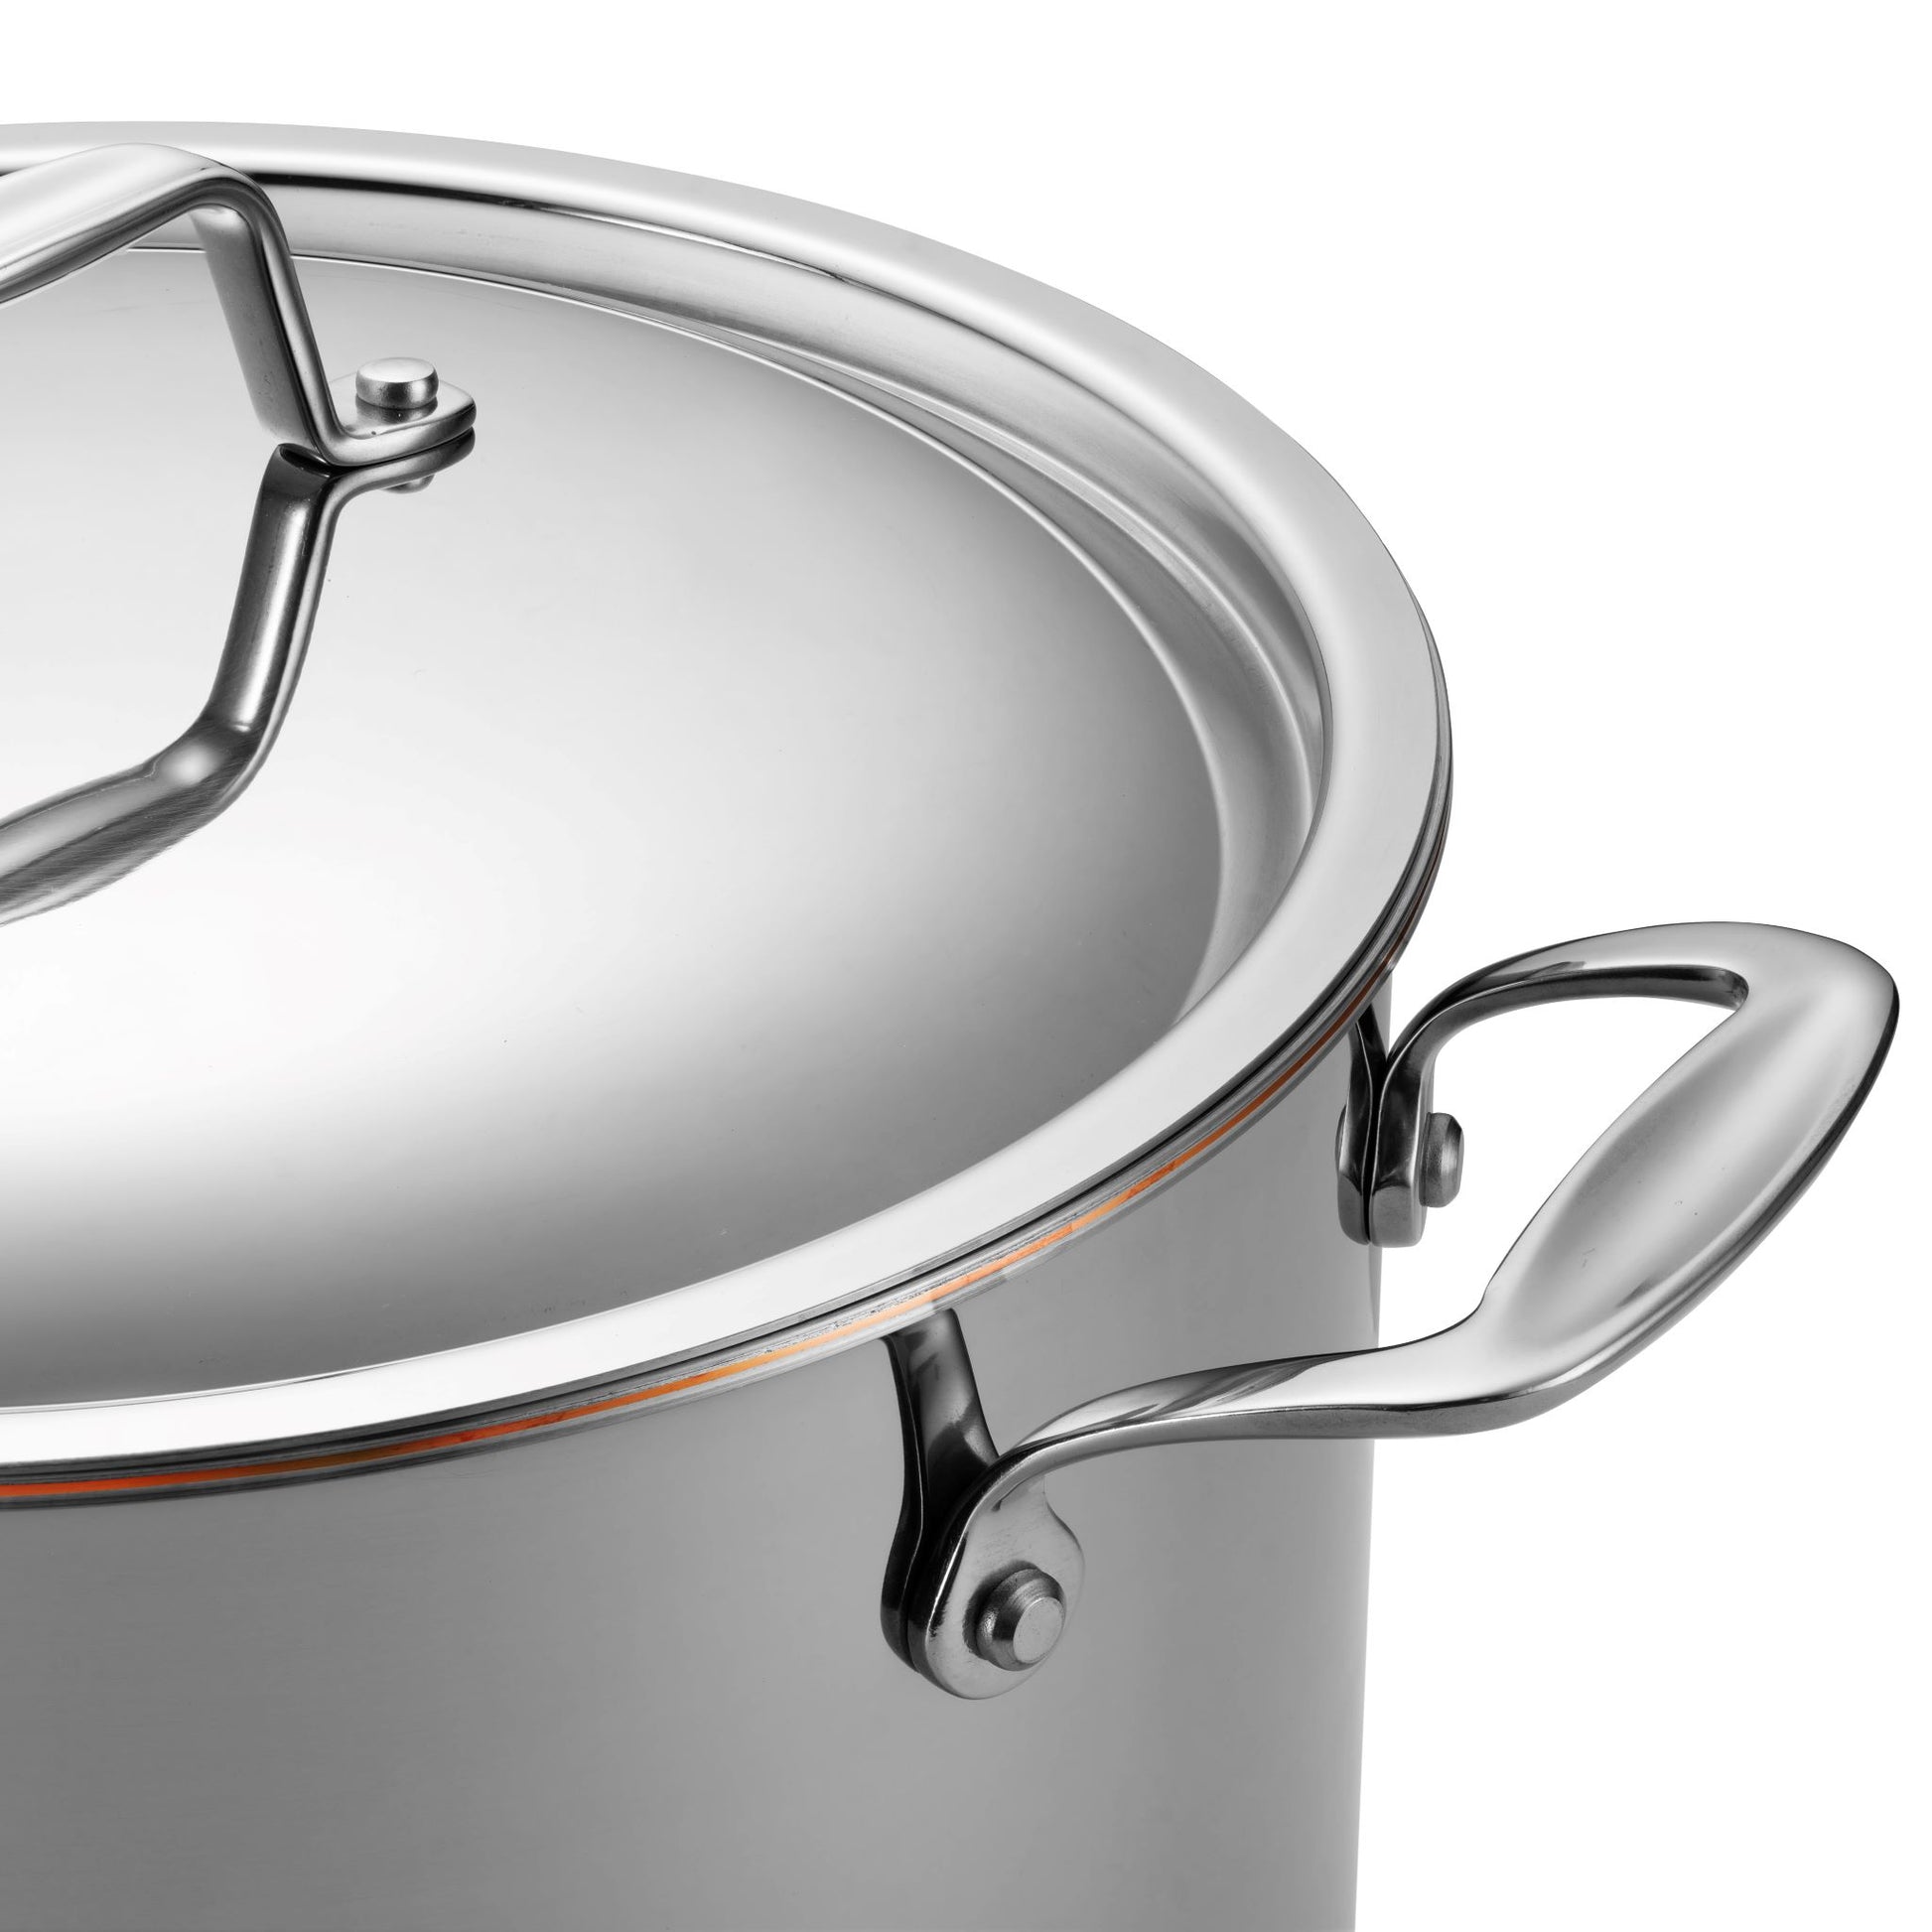 Legend Cookware 12.5 Quart Copper Core 5 Ply Stock Pot - Macy's